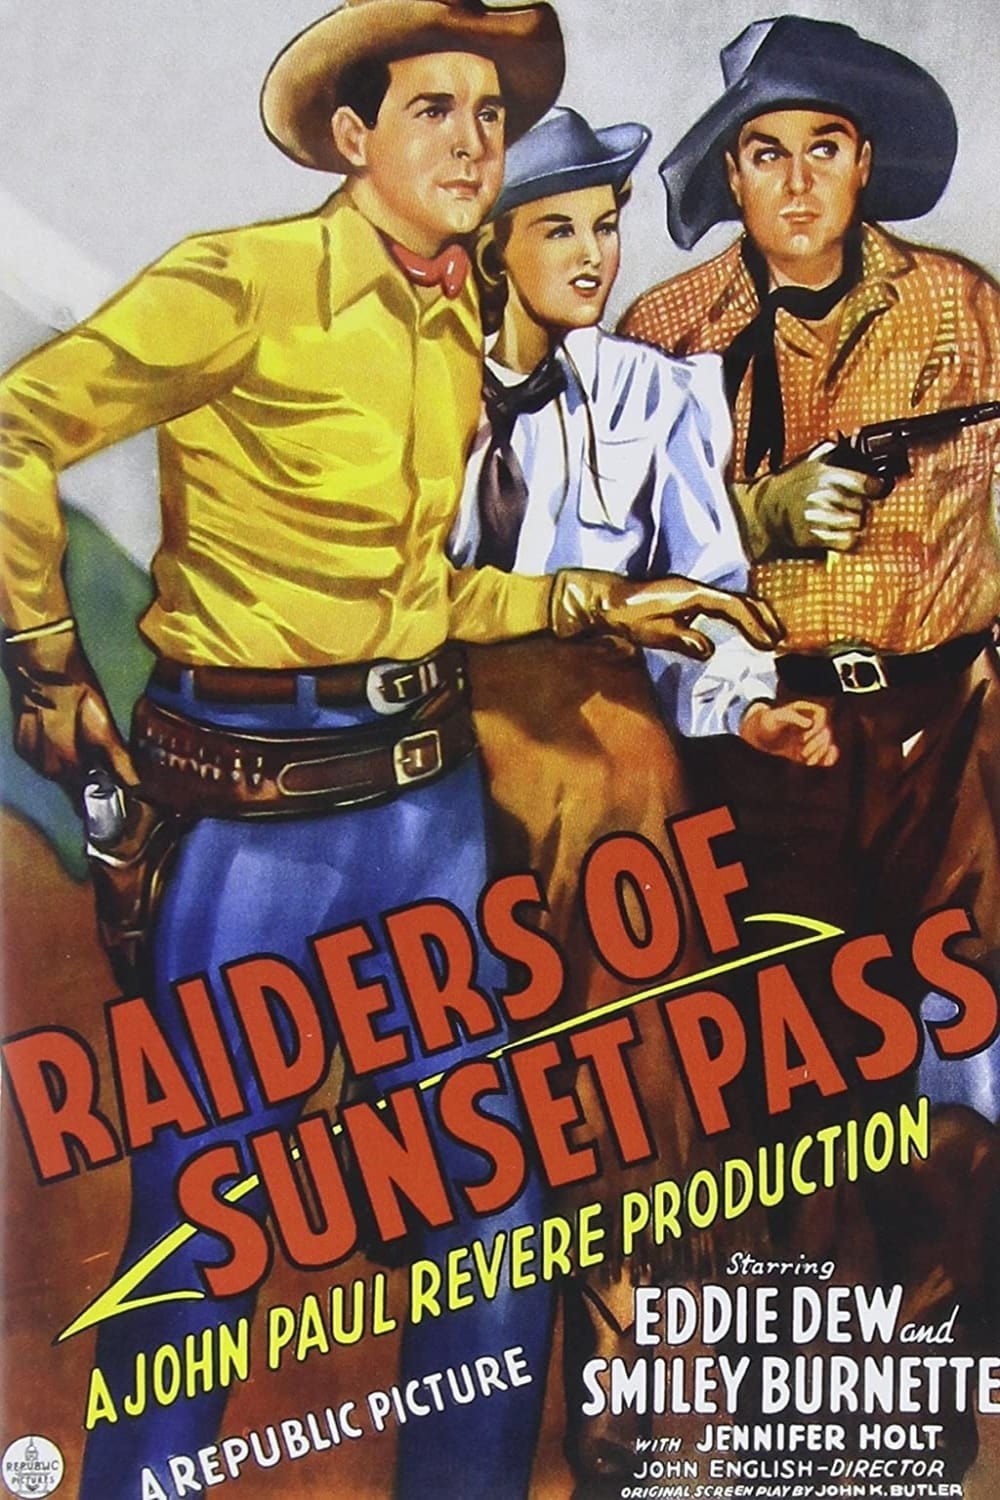 Raiders of Sunset Pass (1943)